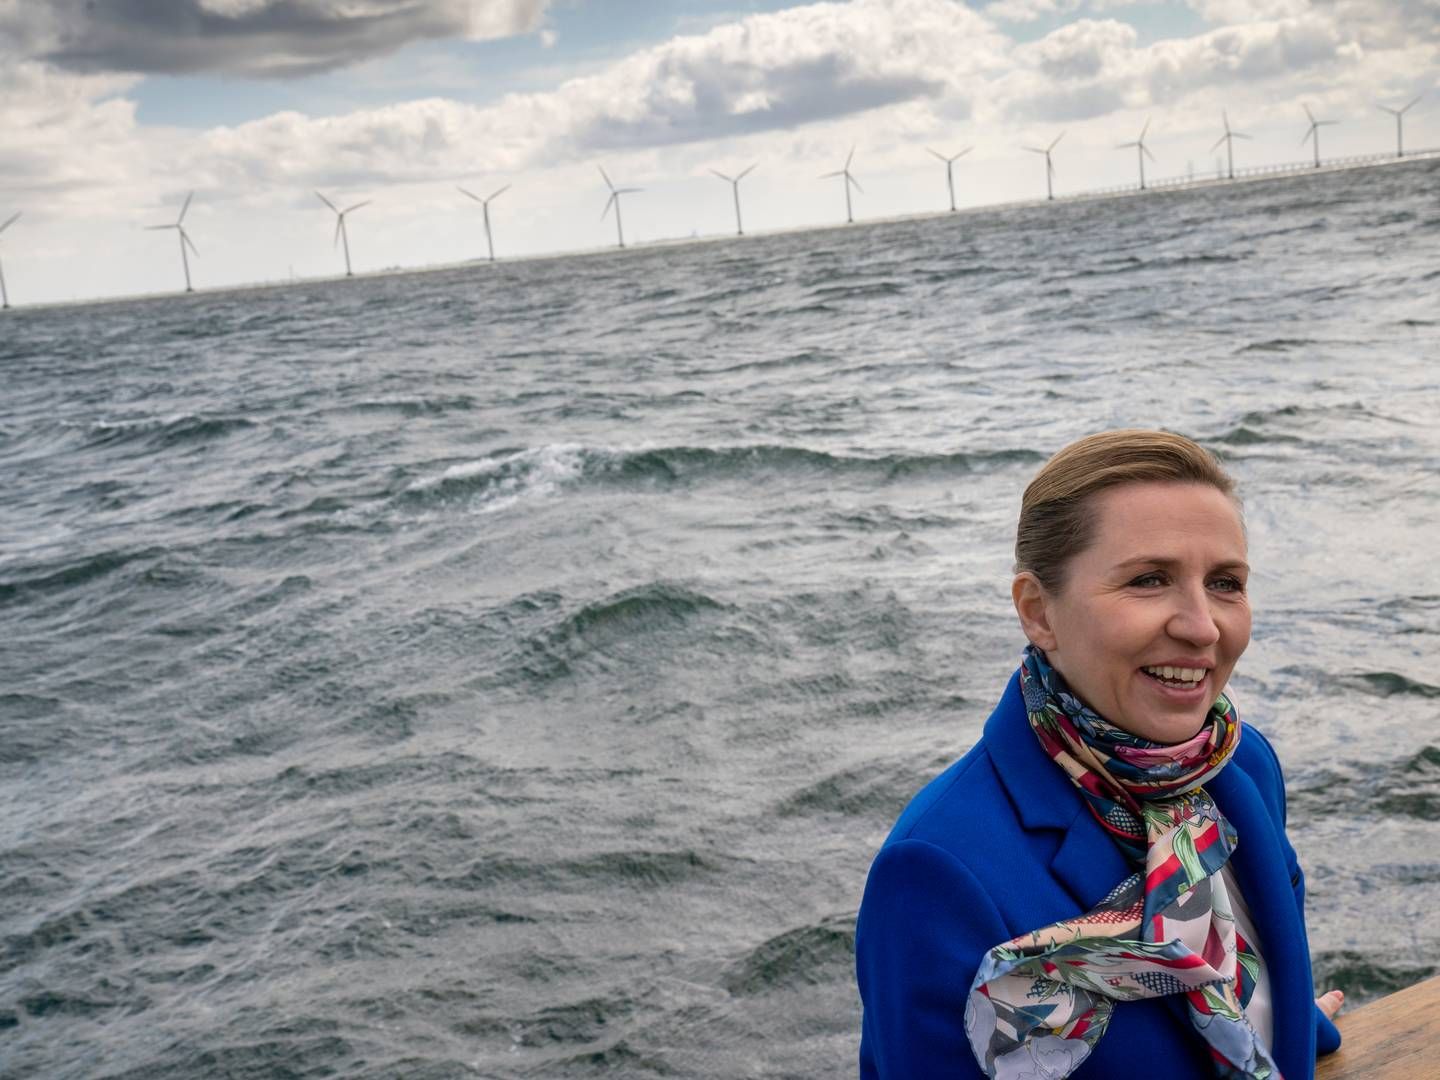 Statsminister Mette Frederiksen rejser mandag til den belgiske havneby Ostende for at underskrive en aftale om at 20-doble havvind i Nordsøen i samspil med otte andre lande. Her ses hun ved en havmølleparken Middelgrunden. | Foto: Stine Bidstrup